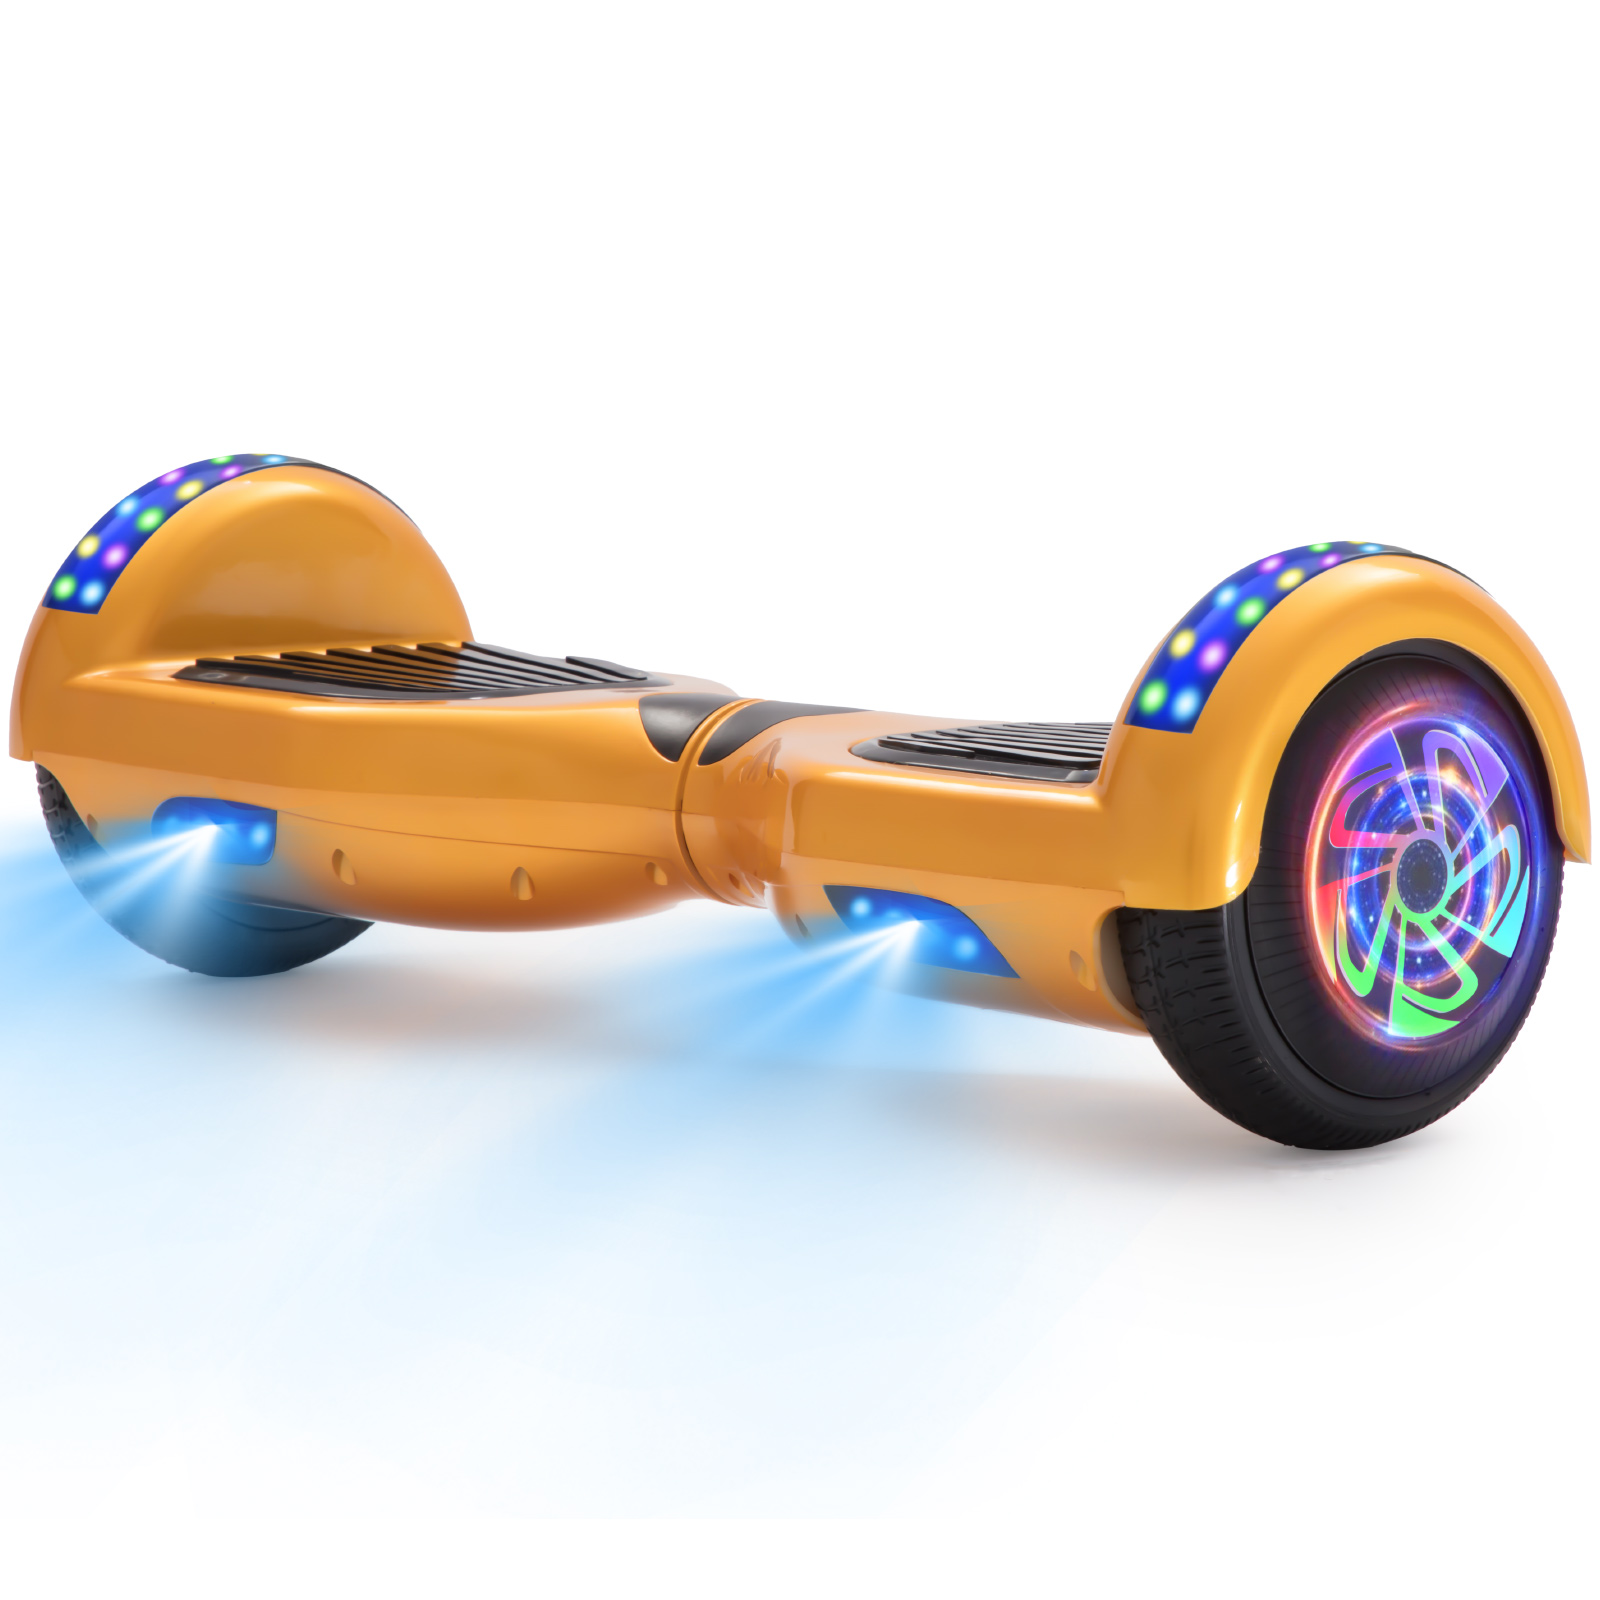 Neues 6,5" gold Hoverboard für Kinder, mit Bluetooth Musik Lautsprecher und Disco LED Licht - 500W 12km/h